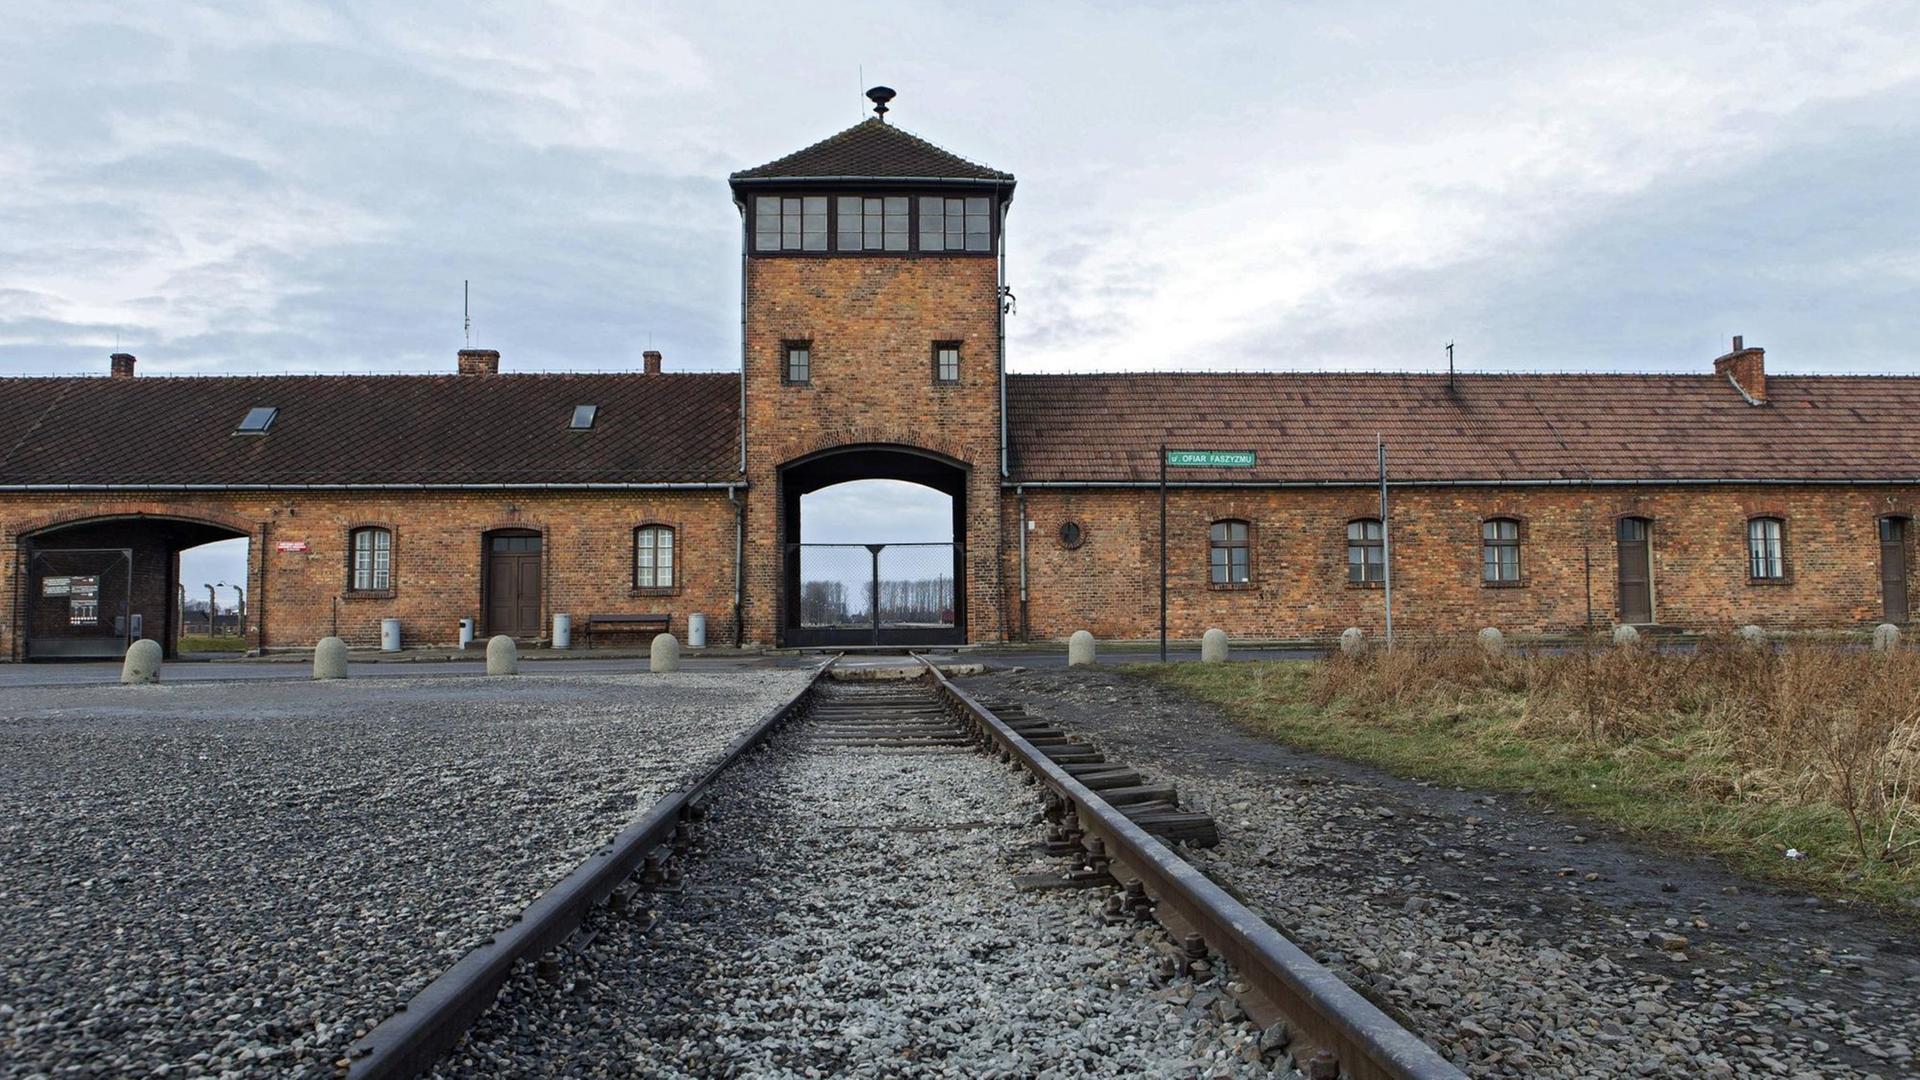 Gleise zum ehemaligen Konzentrationslager Auschwitz-Birkenau in Polen